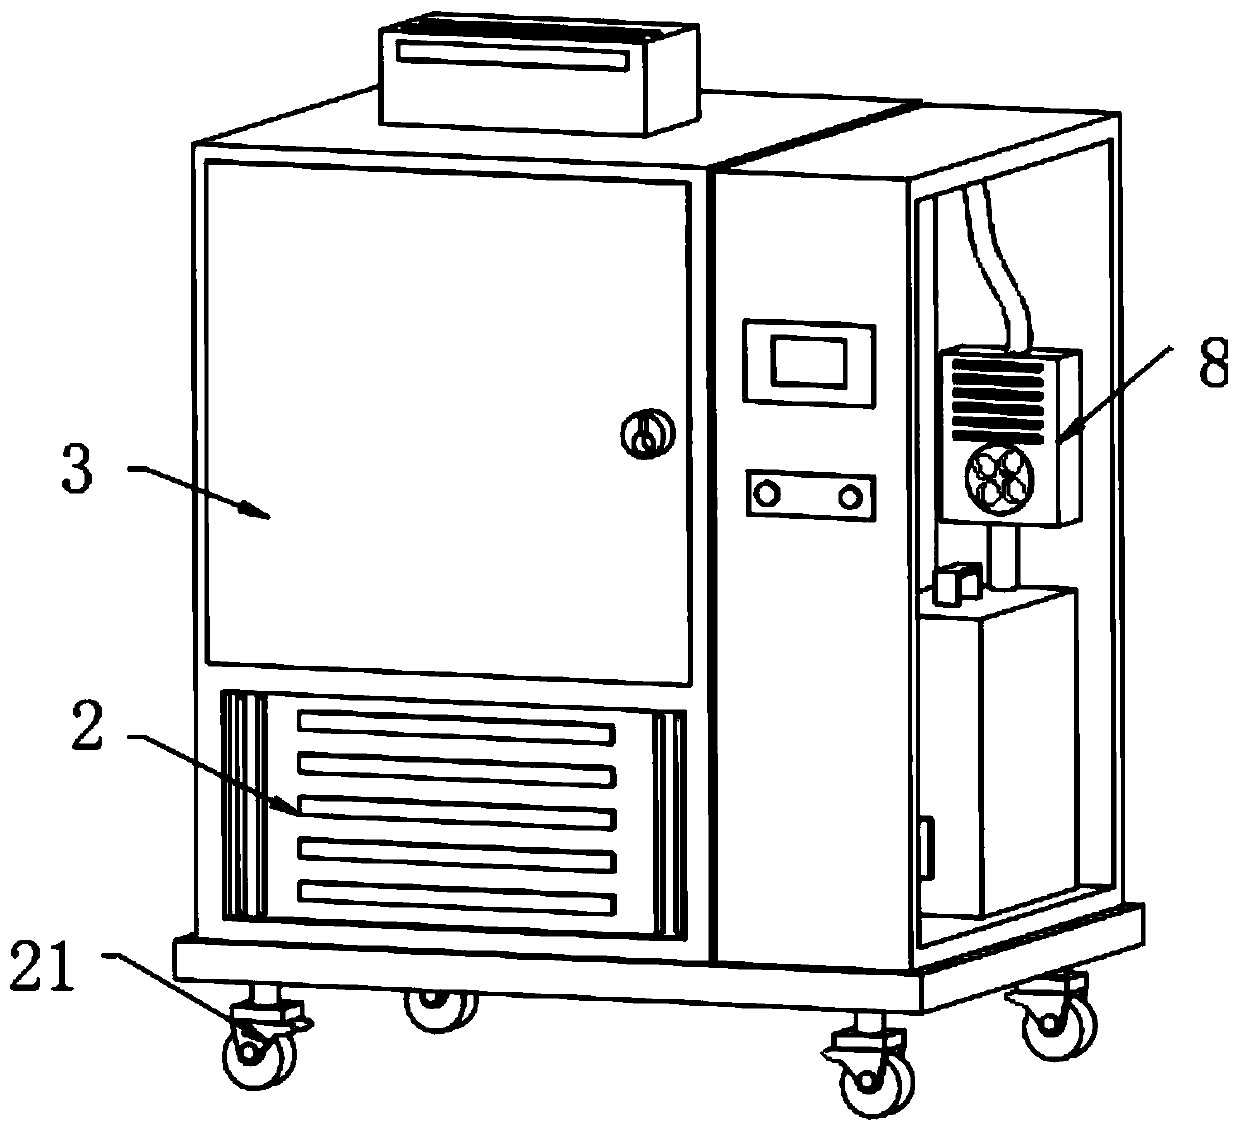 Constant-temperature storage method for logistics transportation